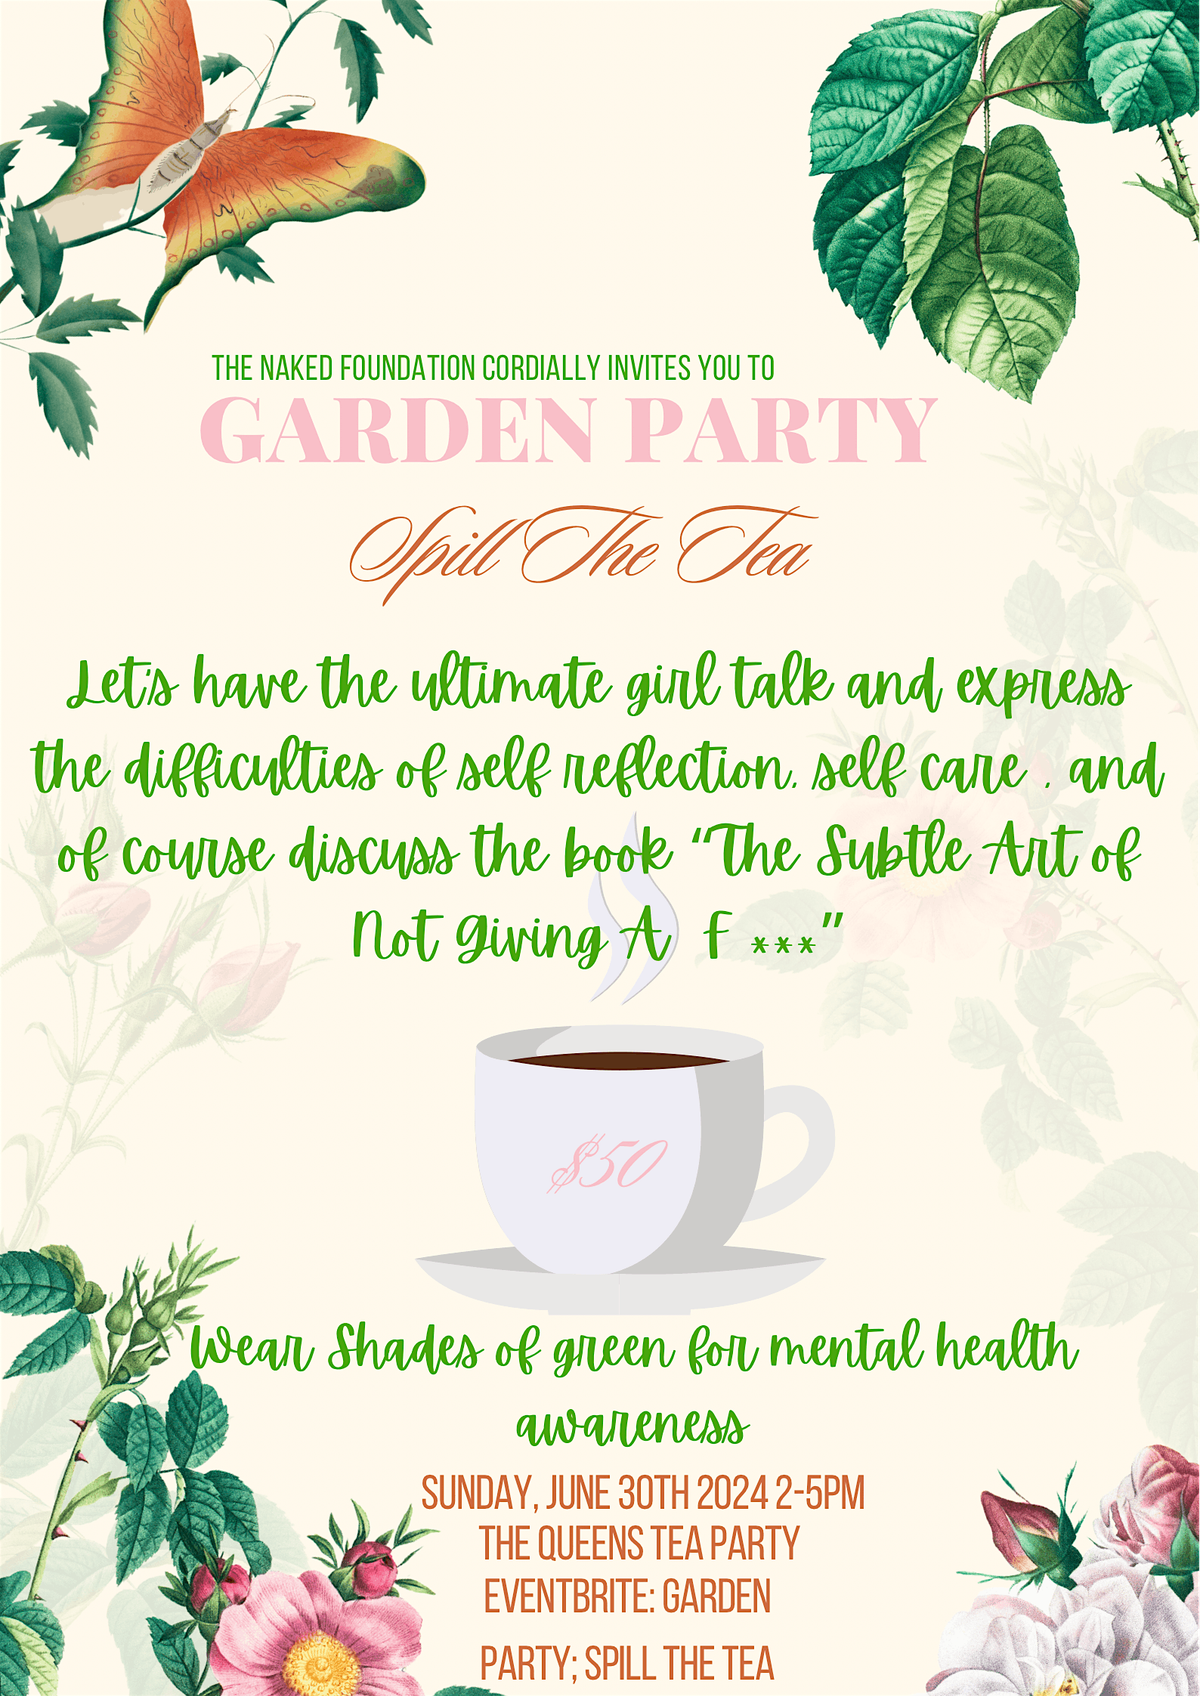 Garden Party; Spill The Tea